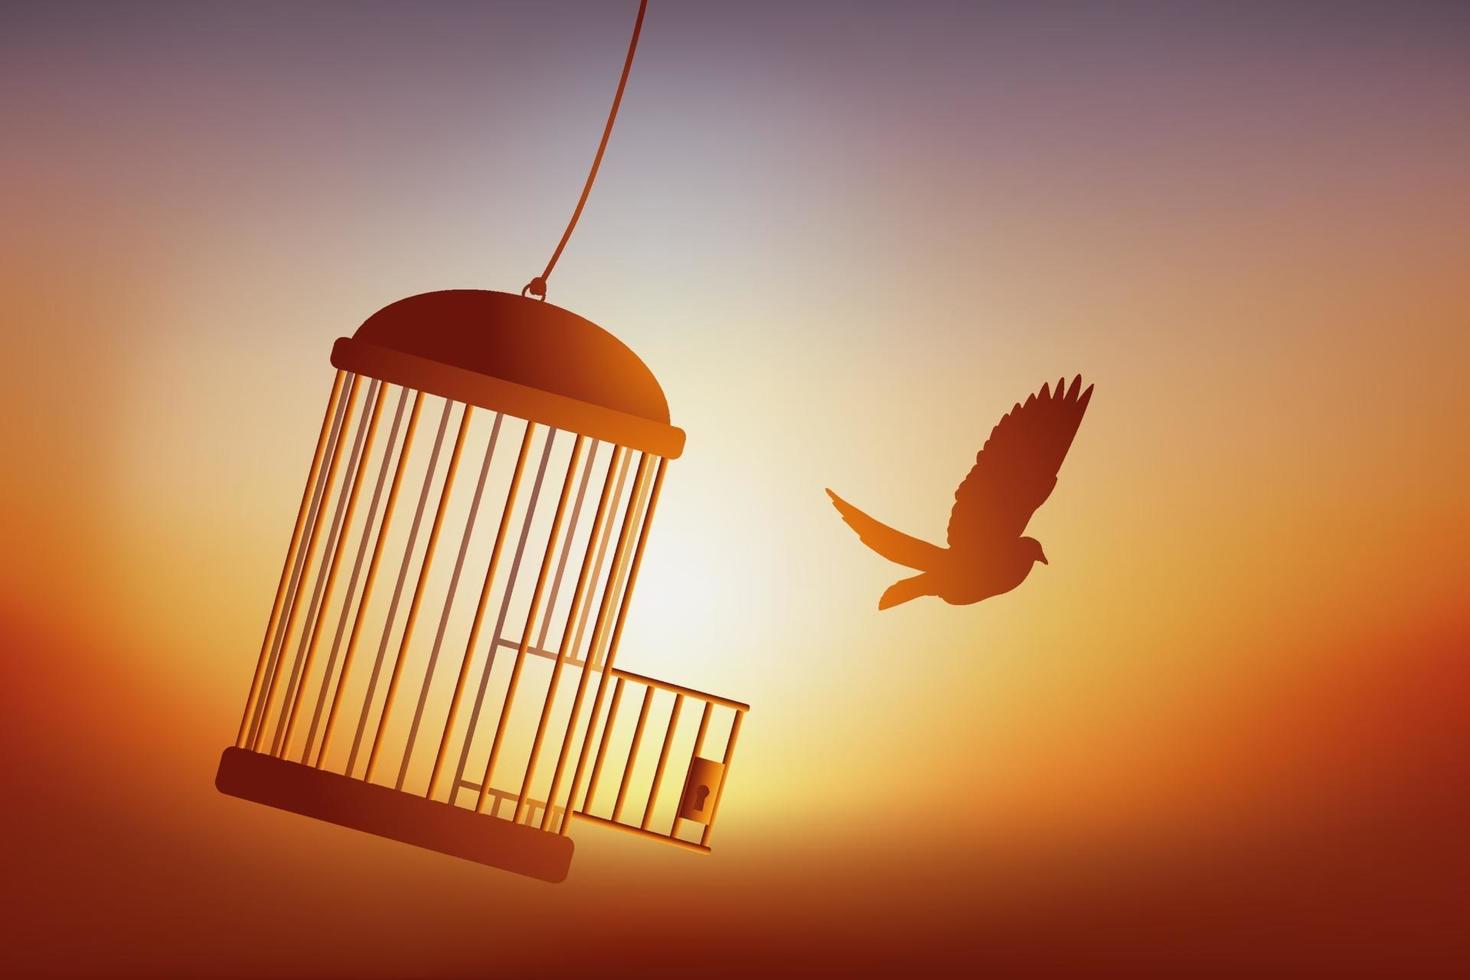 friheten hos en fågel som lämnar sin bur. vektor